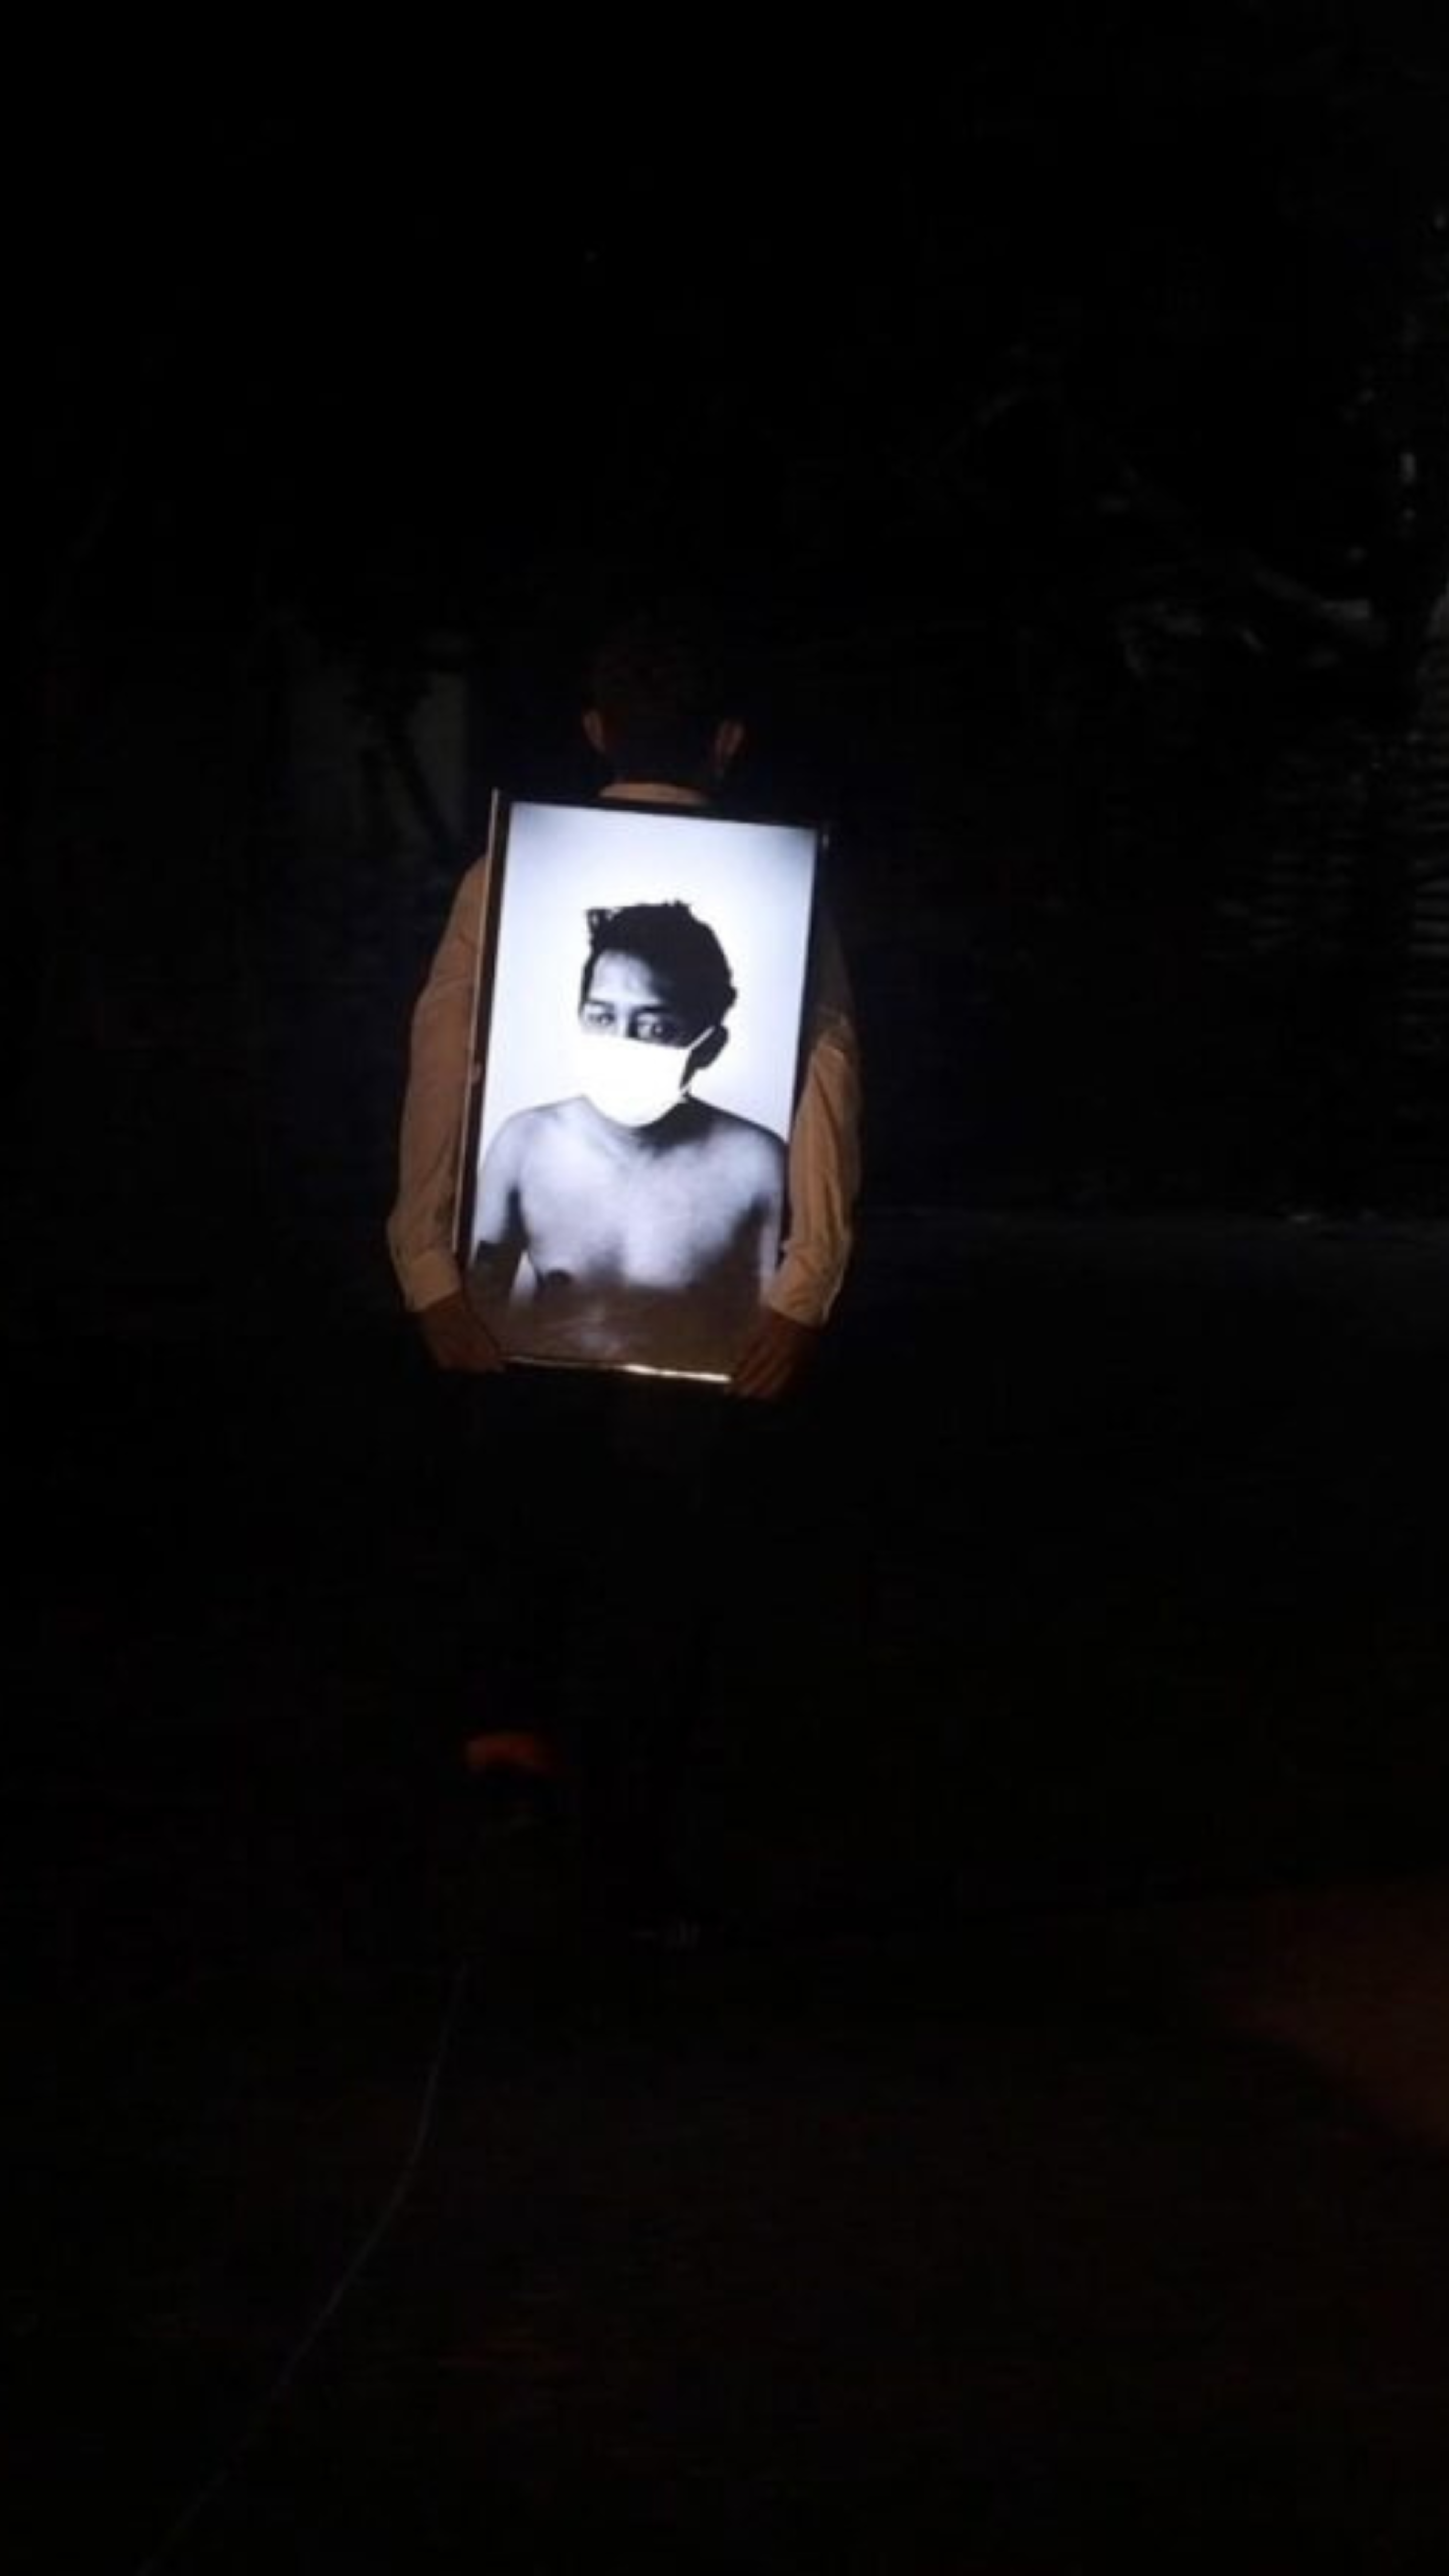 Una persona sostiene un retrato enmarcado con luz de fondo en la oscuridad.